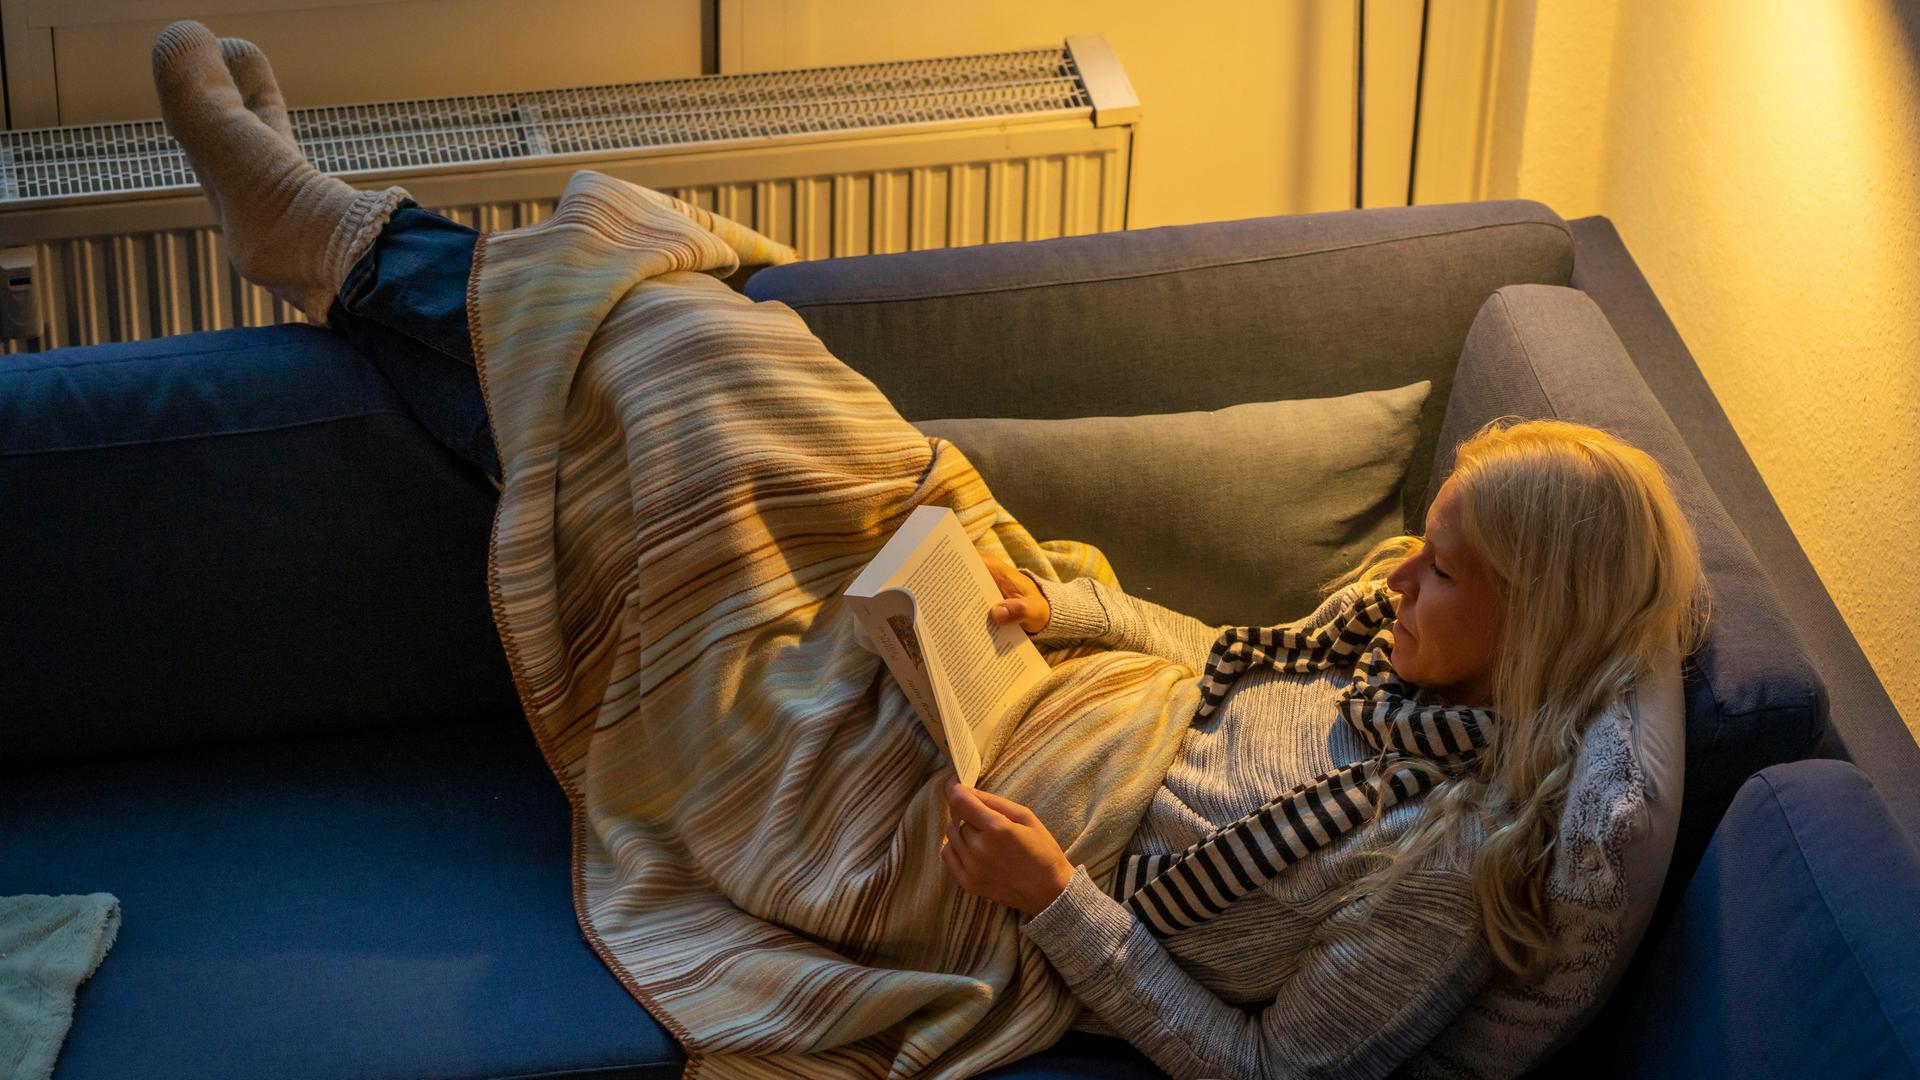 Eine Frau liegt warm angezogen mit Schal, dicken Socken und Decke bei Kerzenlicht auf einer Couch, dahinter ist ein Heizkörper zu sehen